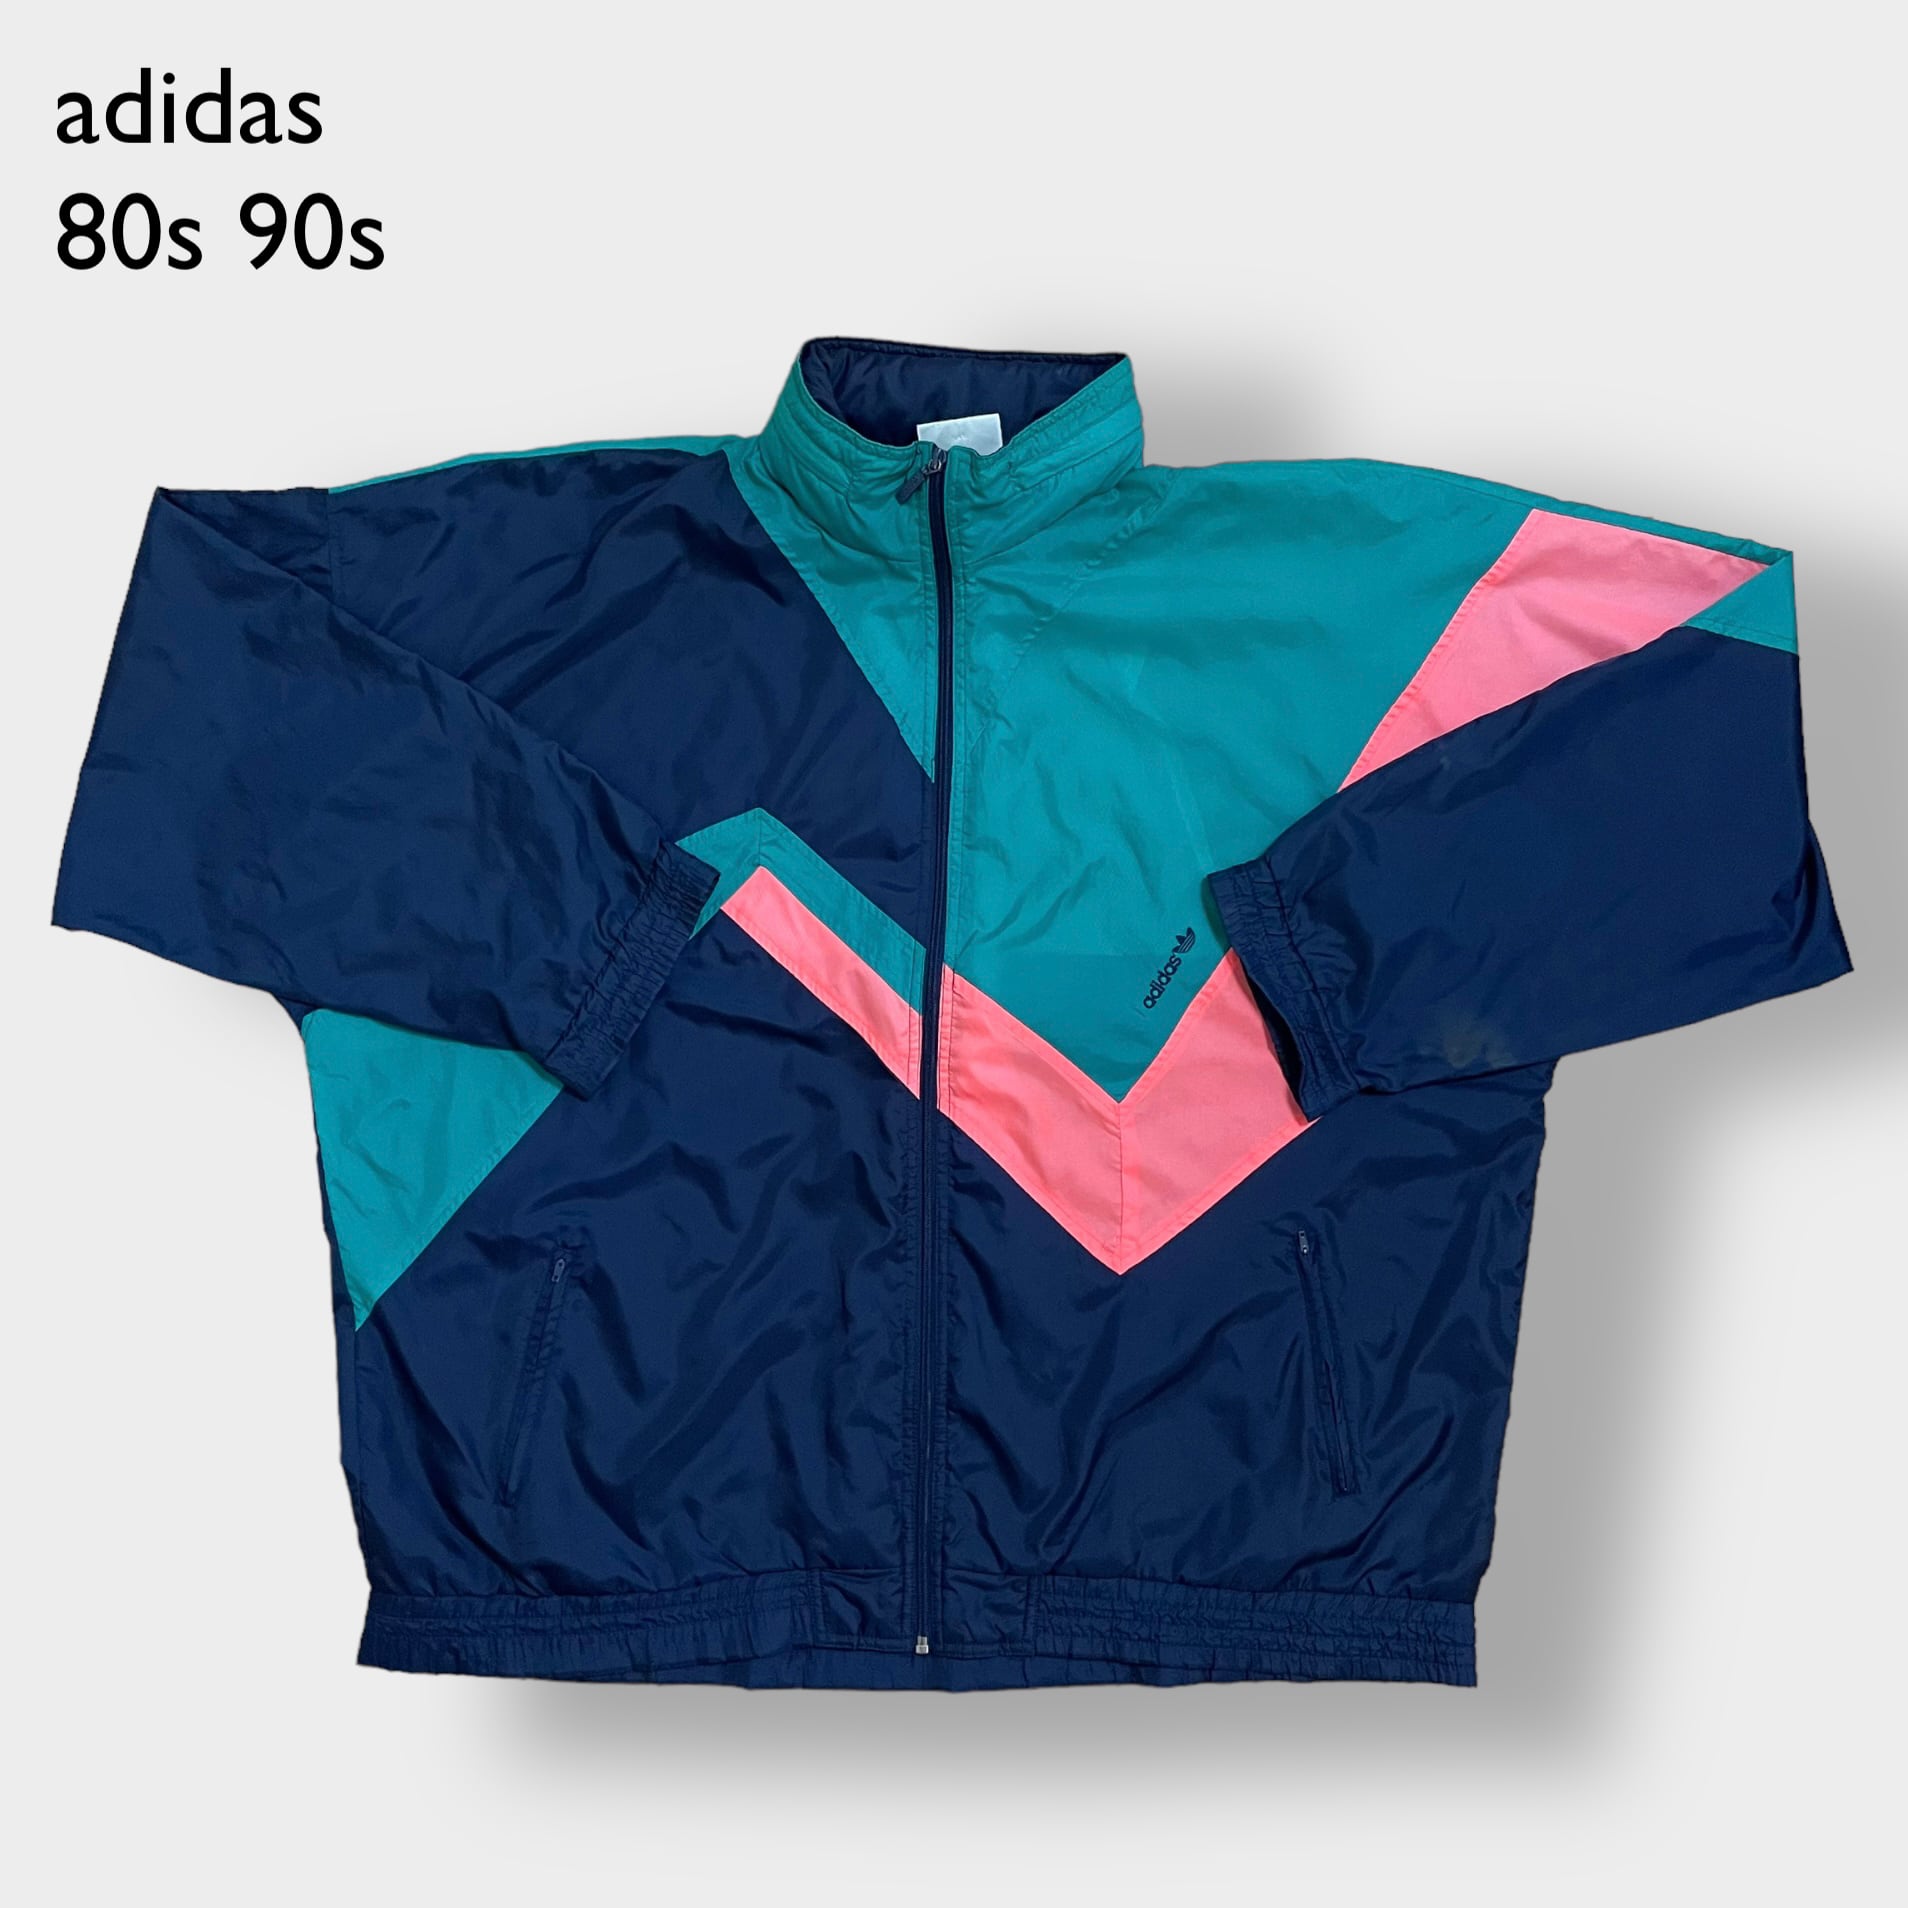 【adidas】80s 90s ジャケット ジャンパー ブルゾン XL ビッグ ...